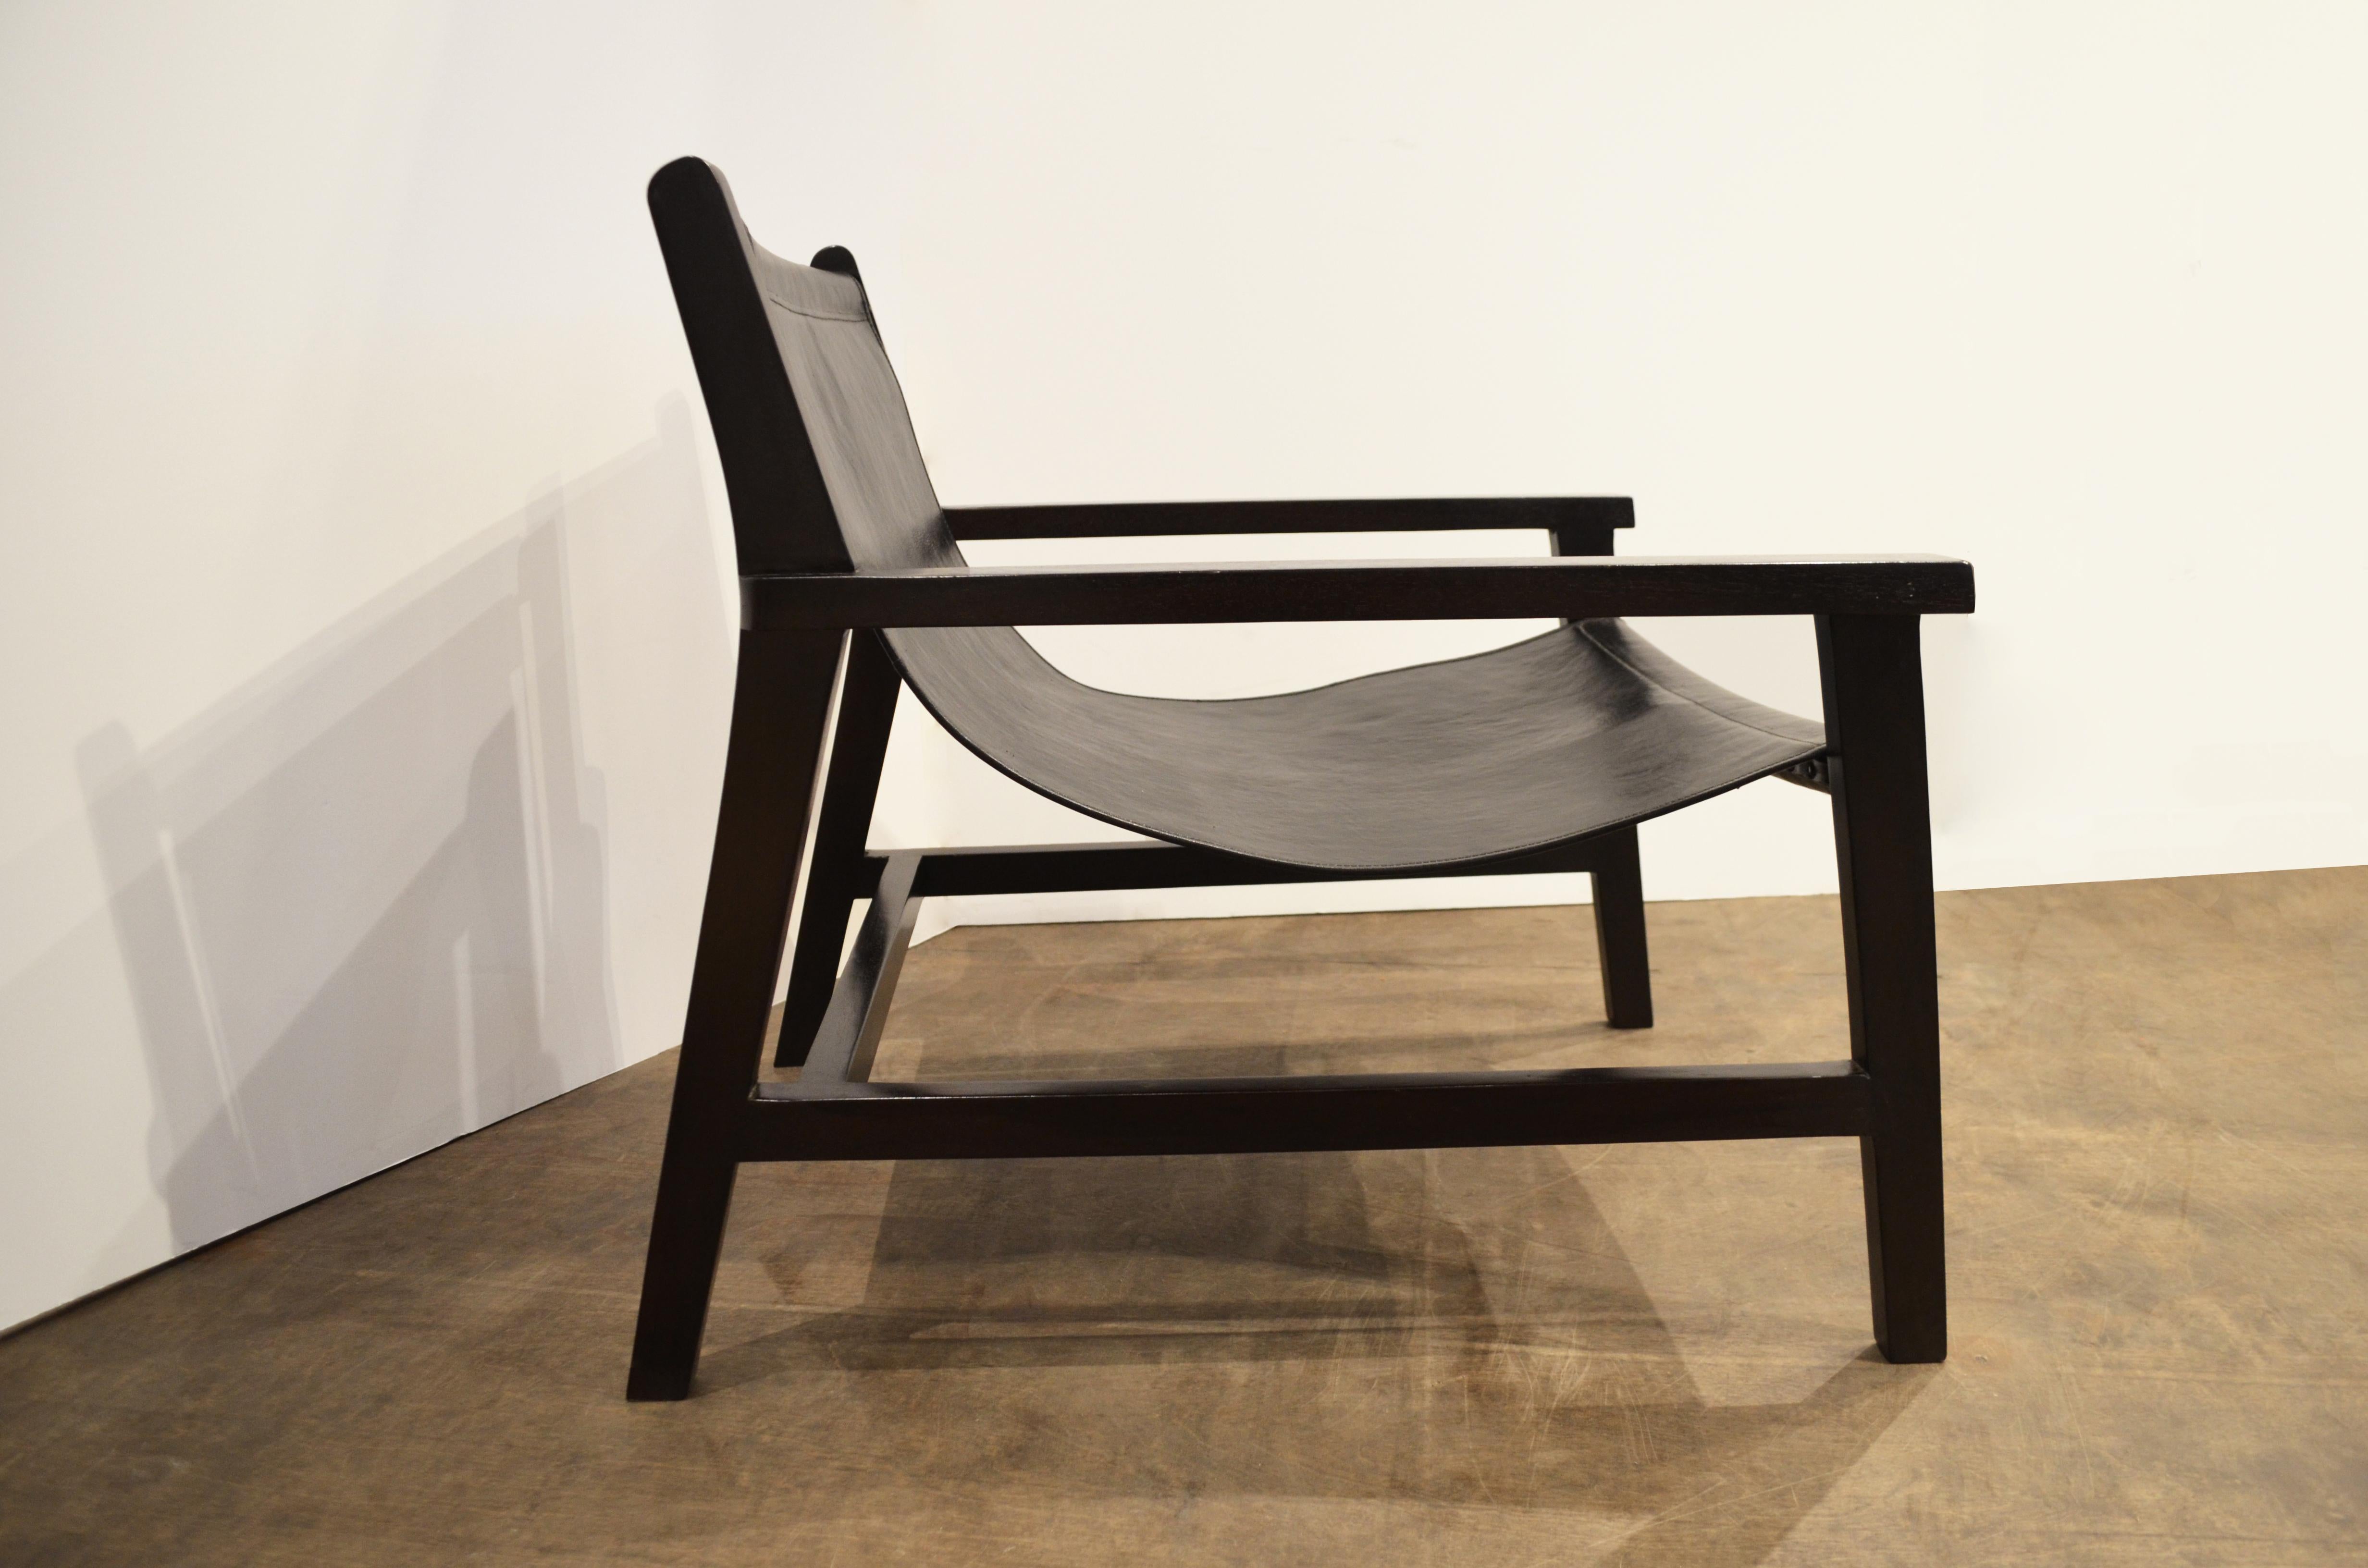 Der Ultimate Chair ist aus hochwertigem Leder und einem Teakholzrahmen gefertigt. Das neue Plus-Modell ist ebenfalls doppelt mit Leder unterlegt.

Abgebildet: Schwarzes Leder mit dunkelbraunem Teakholzrahmen. Individuelle Leder- und Holzbeize